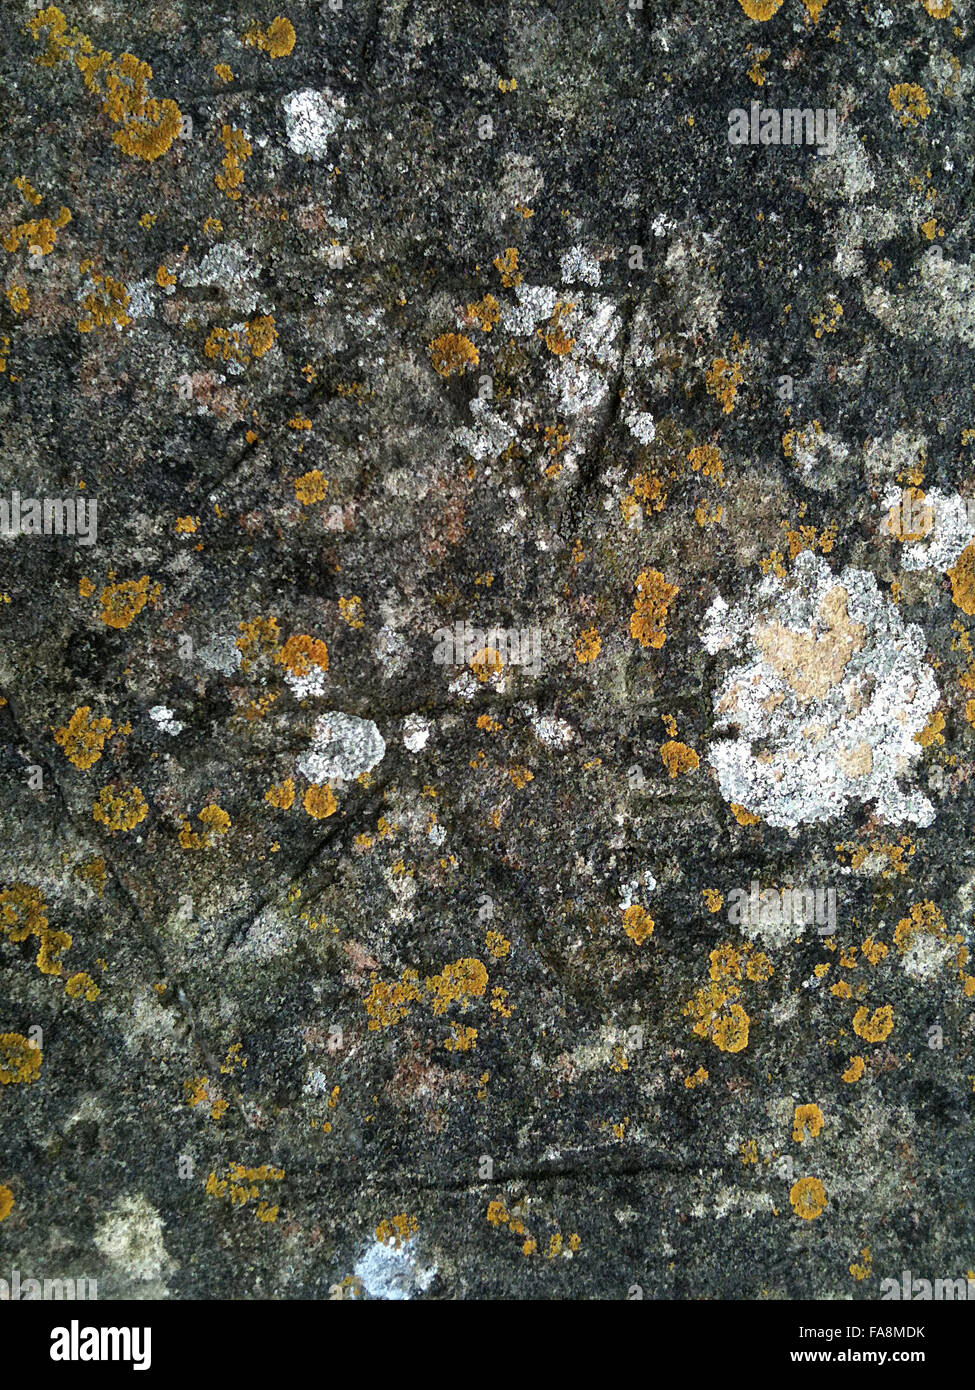 Lichen sur le pont palladien au paysage du parc Avant jardin, salle de bain, dans le Somerset. Image prise sur un i-phone, taille de fichier maximum 9MB. Banque D'Images